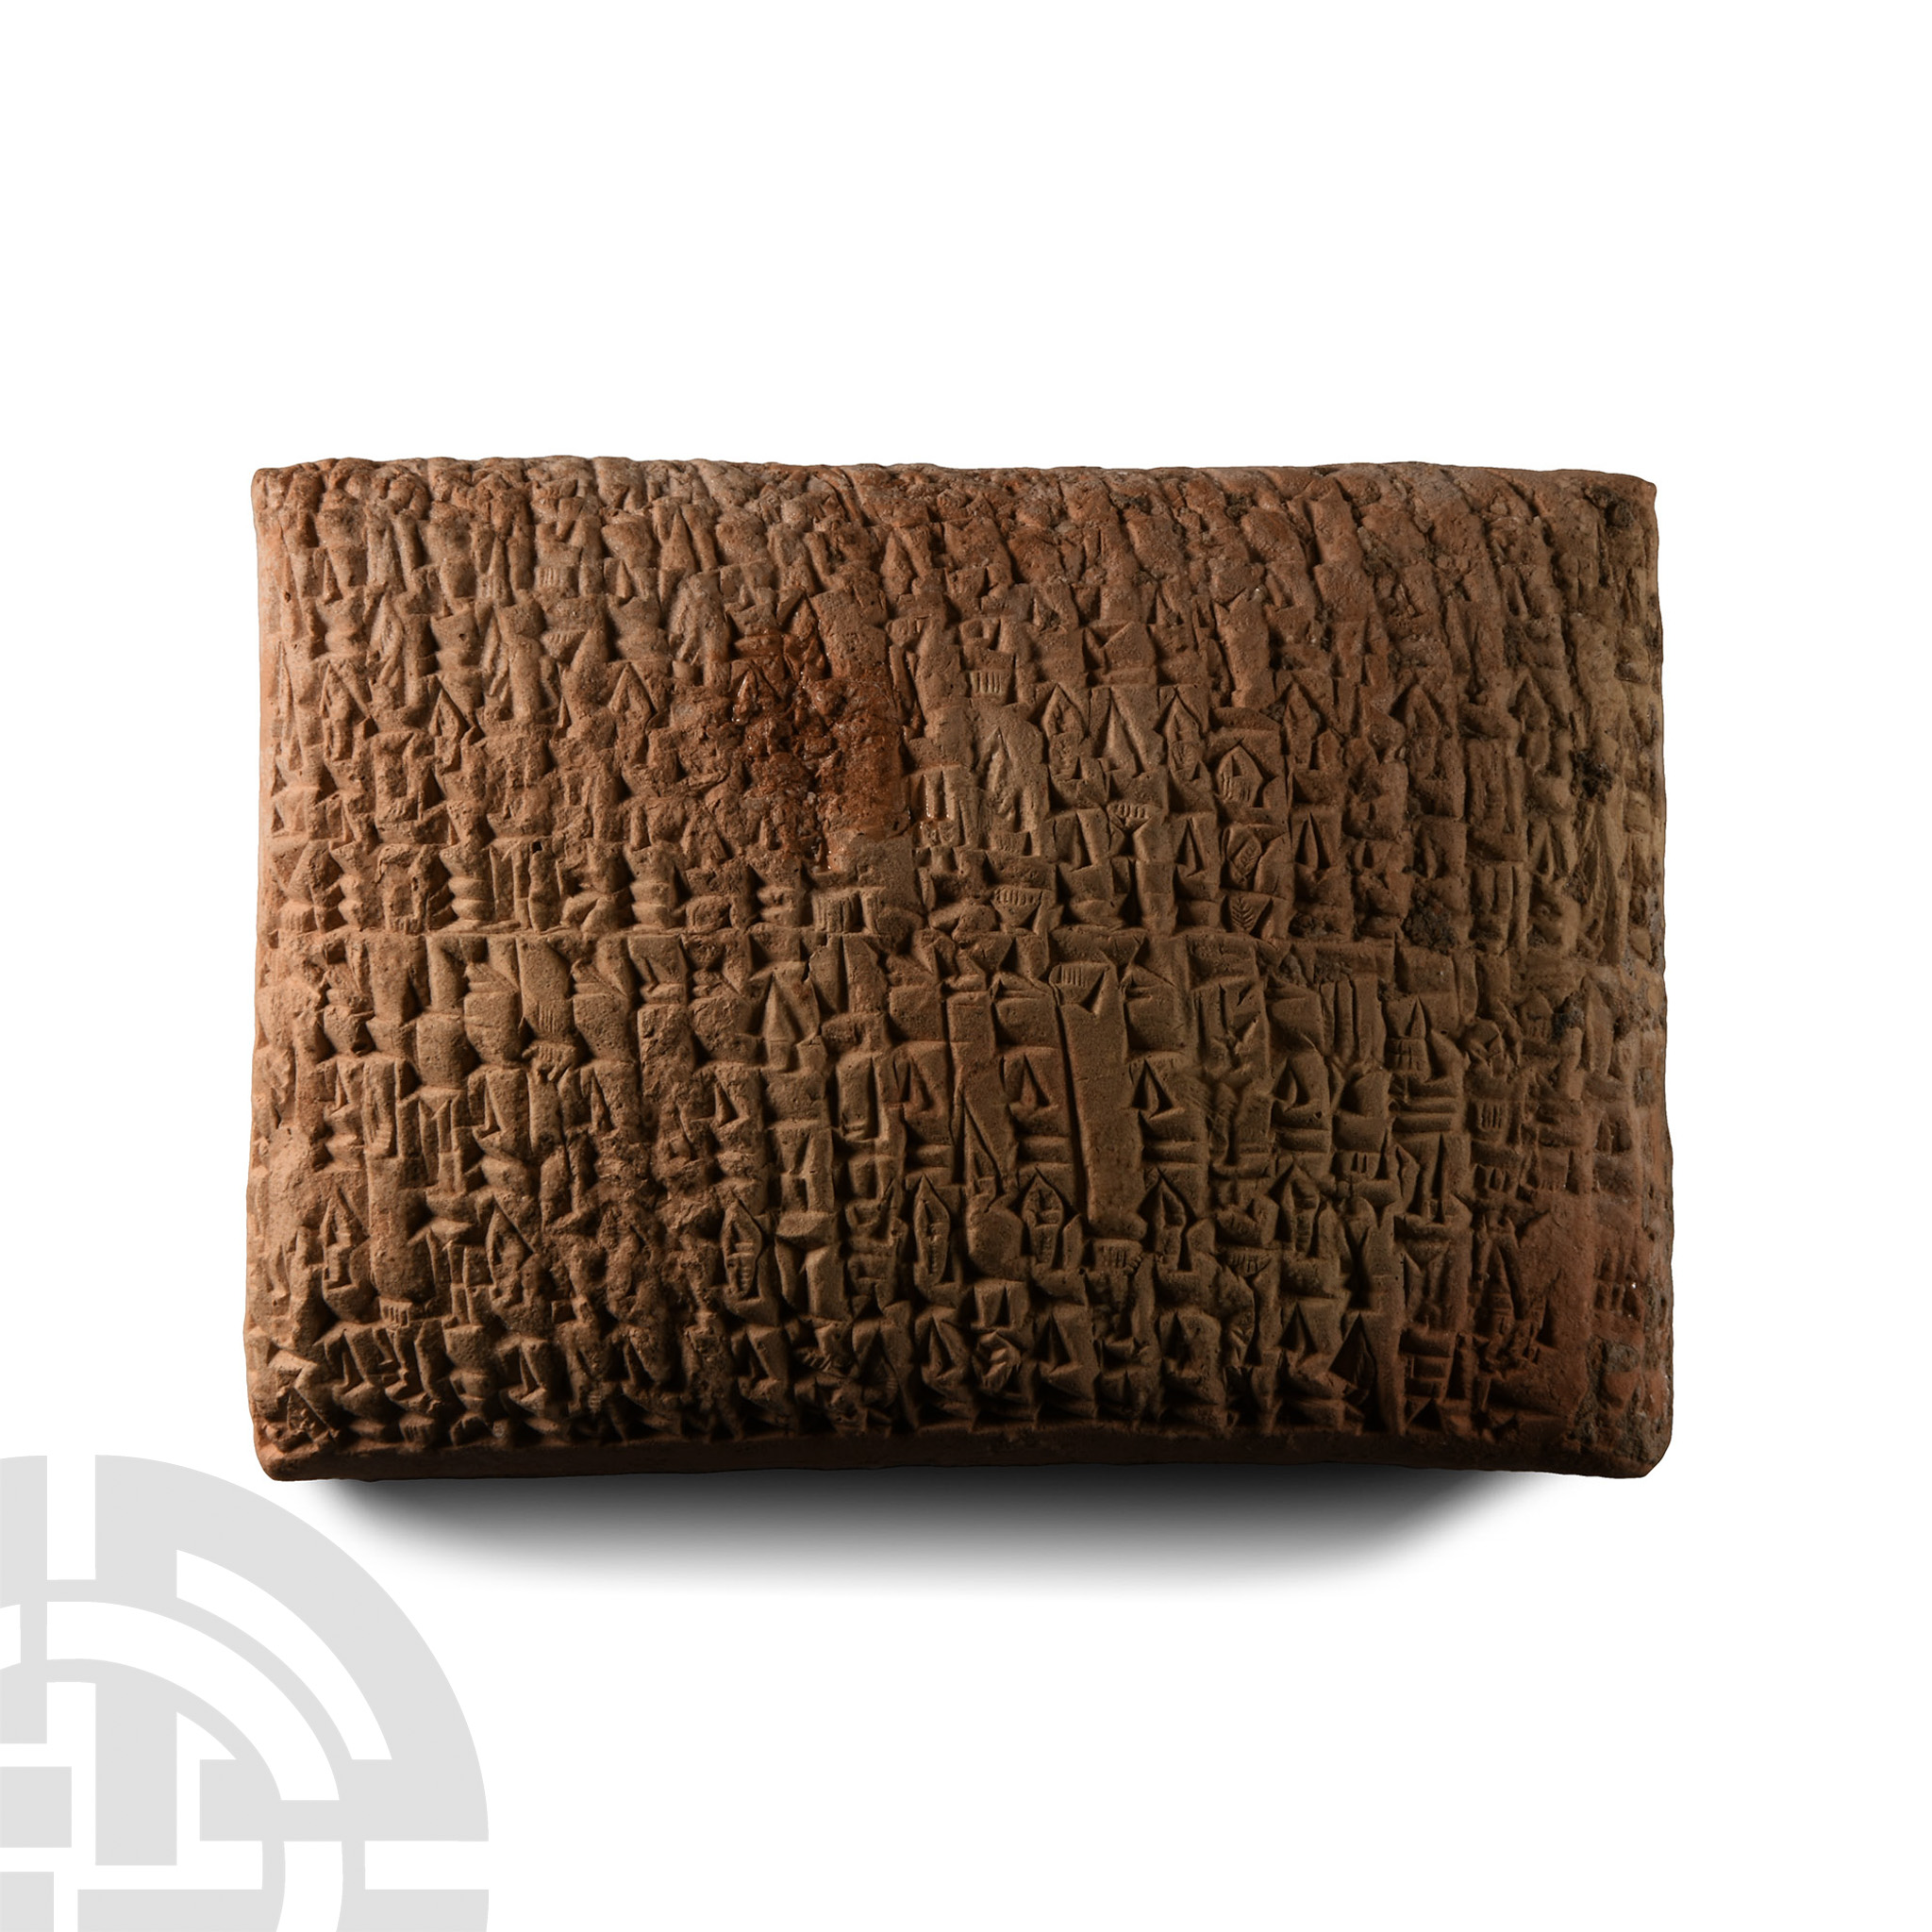 Old Babylonian Cuneiform Messenger Tablet Recording the Journeys of Royal Envoys - Image 2 of 2